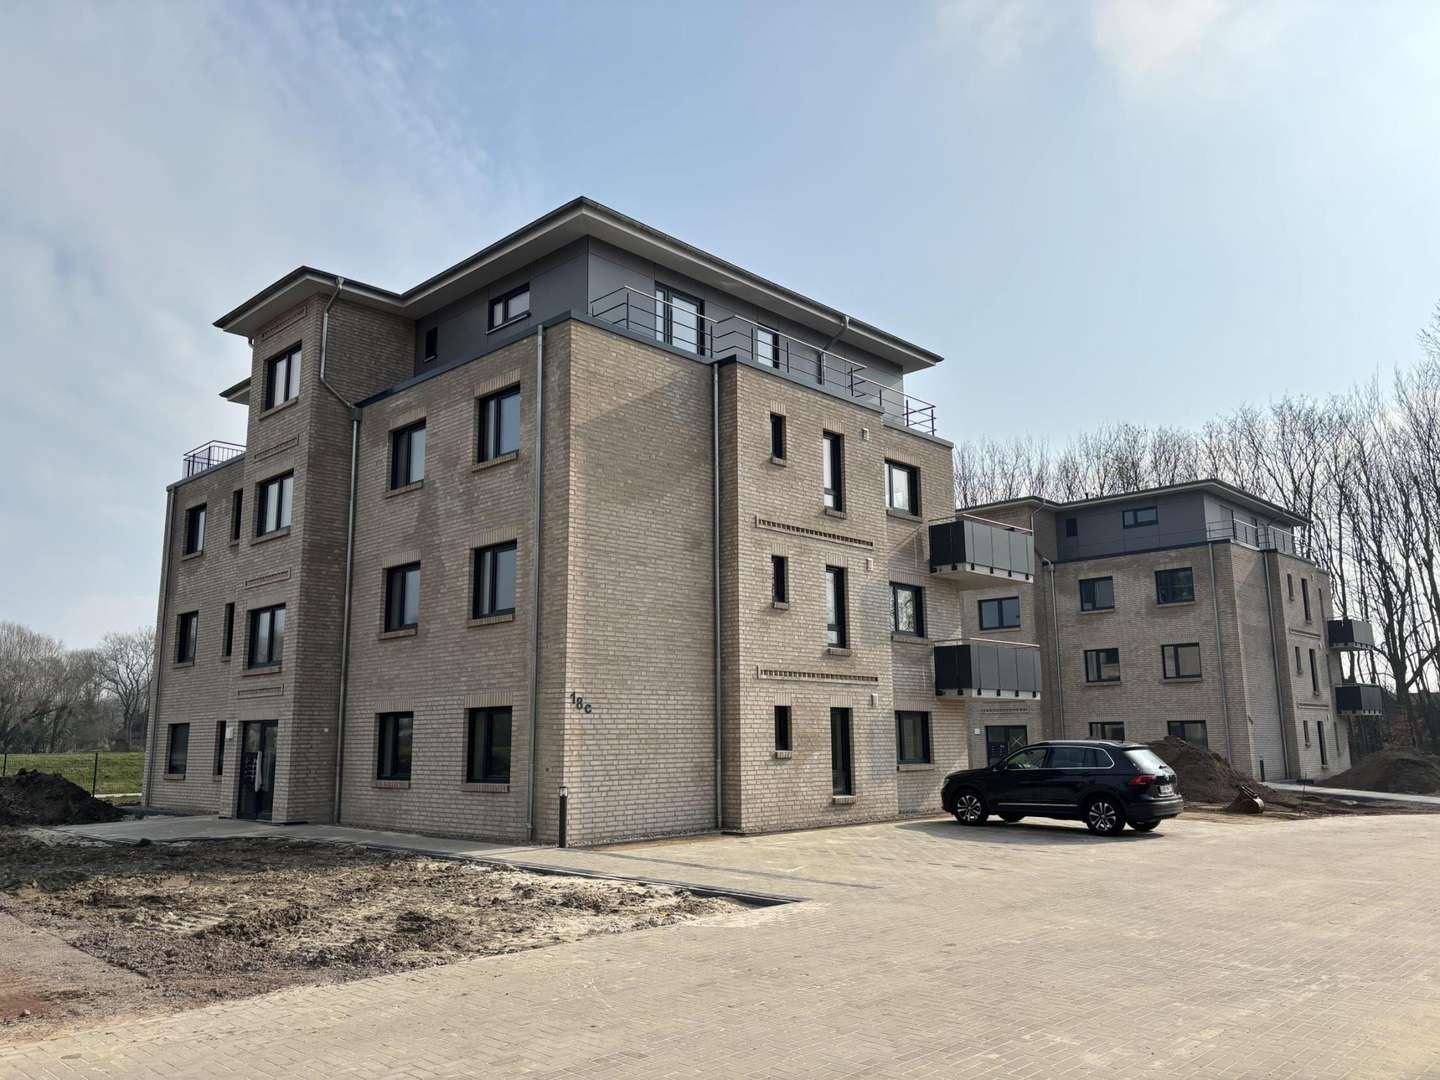 IMG_3969 - Etagenwohnung in 29439 Lüchow mit 101m² kaufen